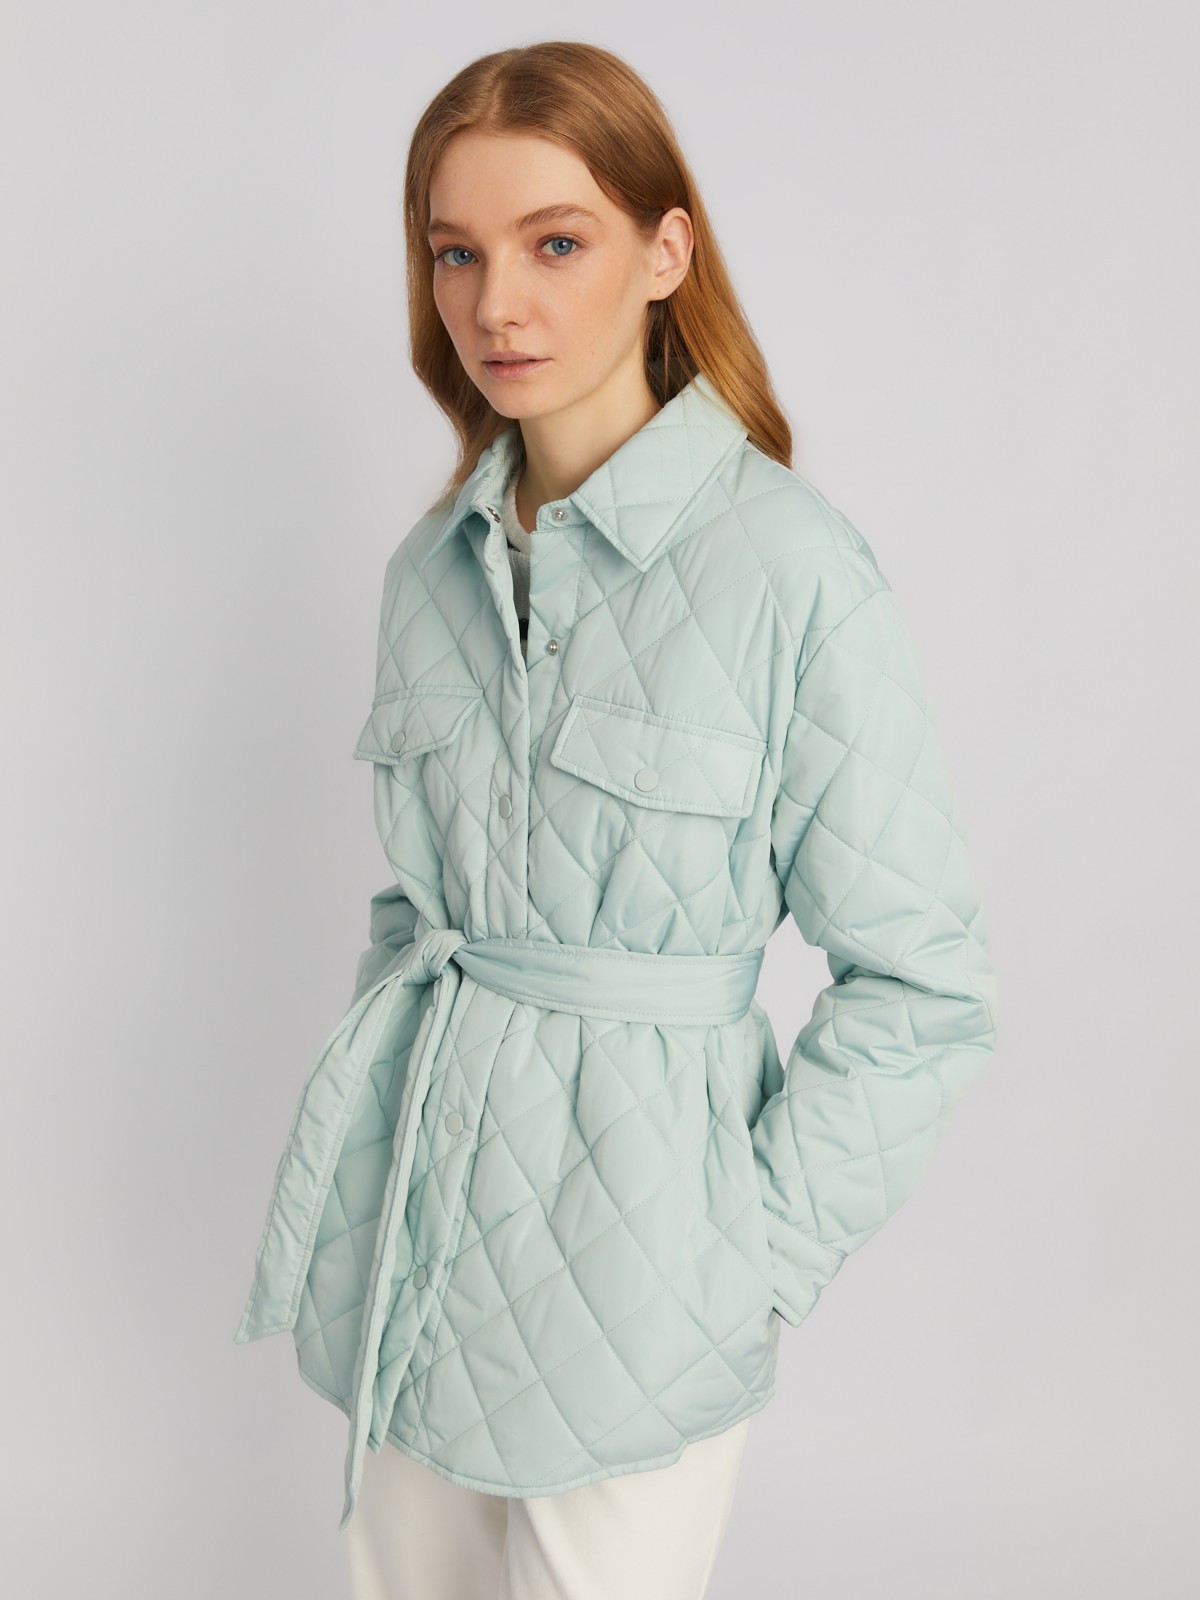 Утеплённая стёганая куртка-рубашка на синтепоне с поясом zolla 024135102134, цвет мятный, размер XS - фото 4